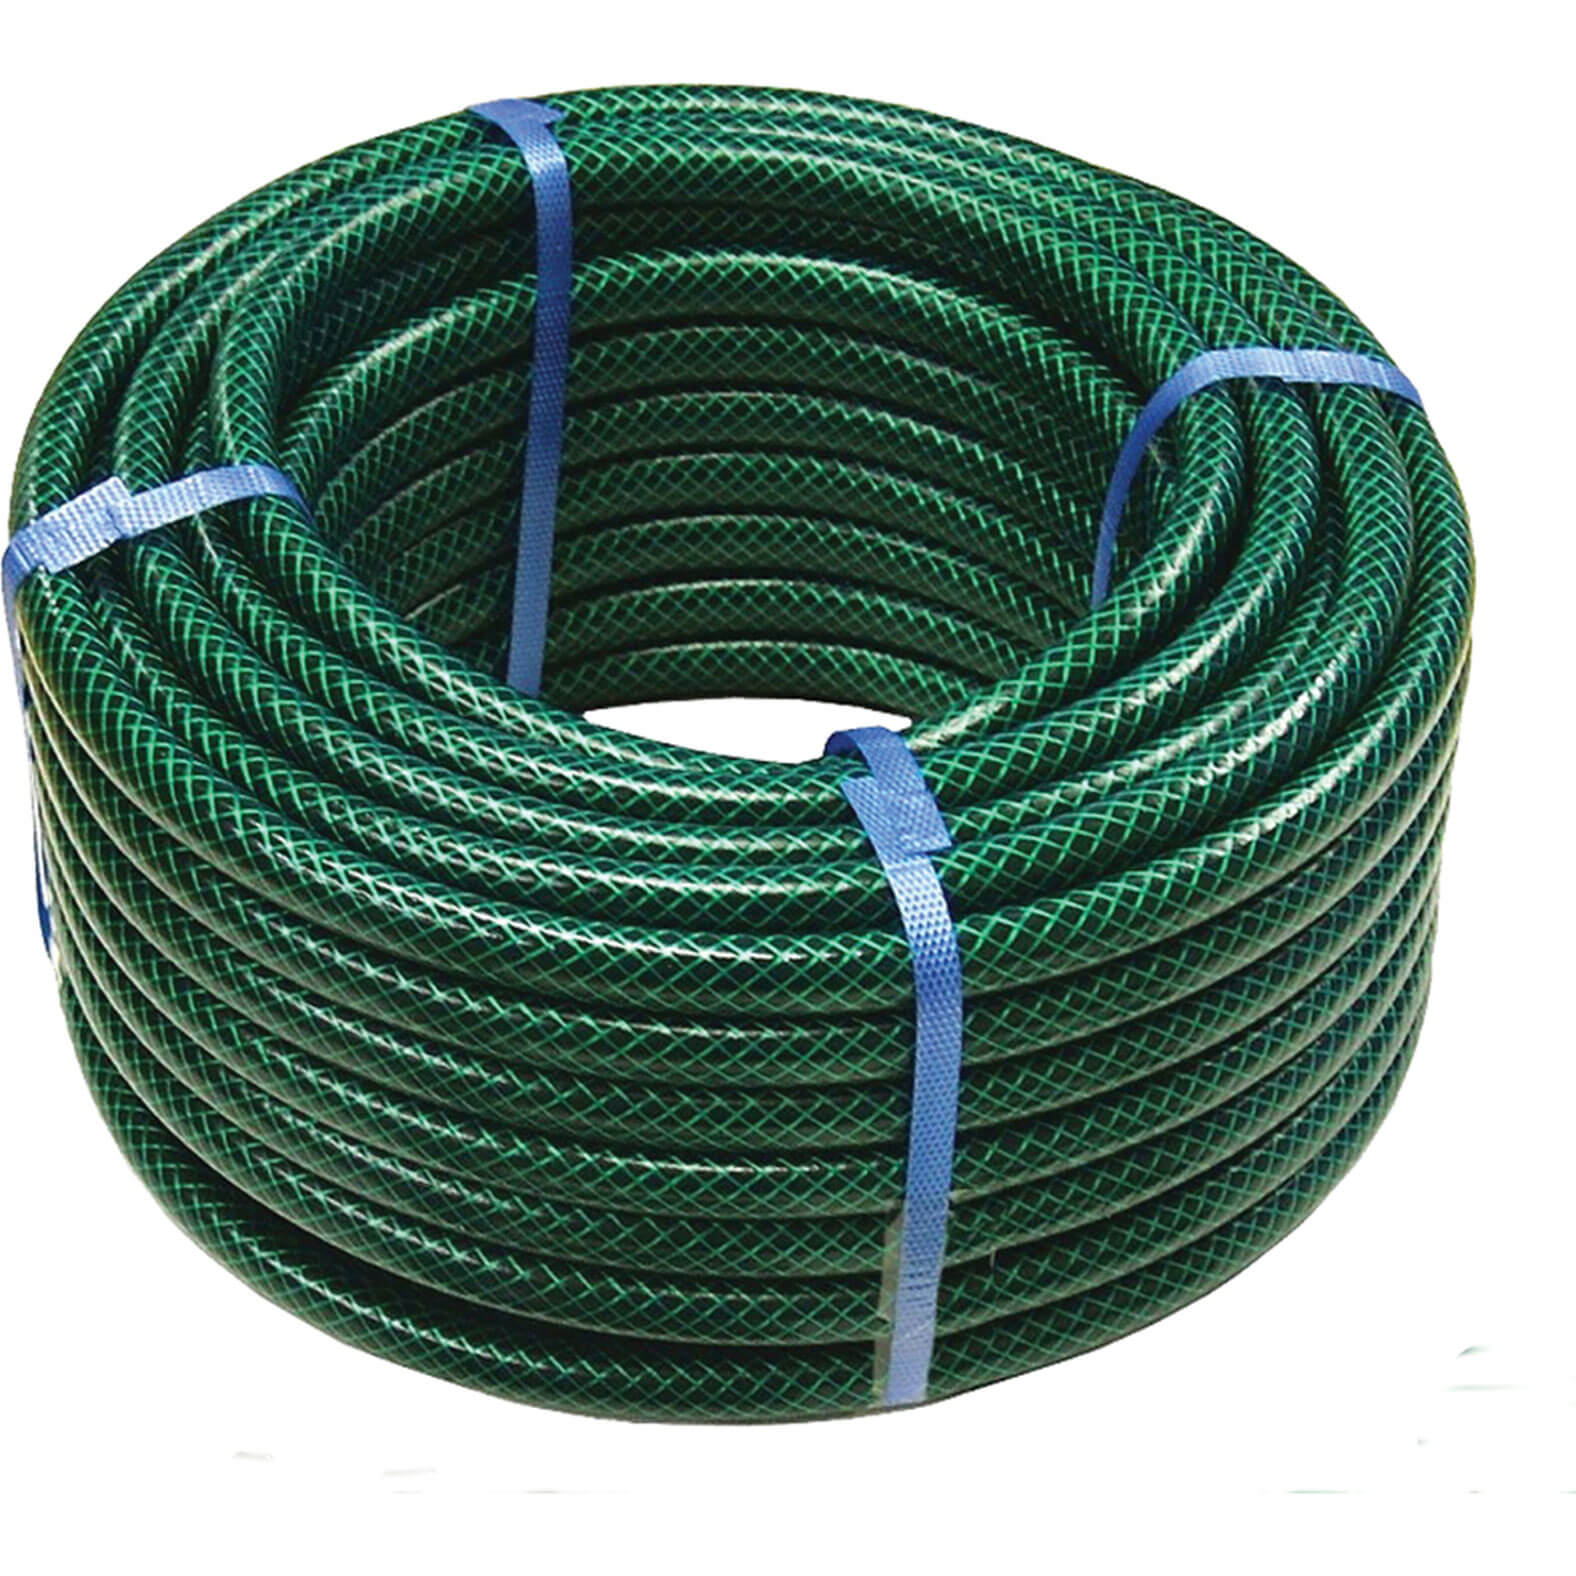 Image of Faithfull PVC Reinforced Garden Hose Pipe 1/2" / 12.5mm 15m Green